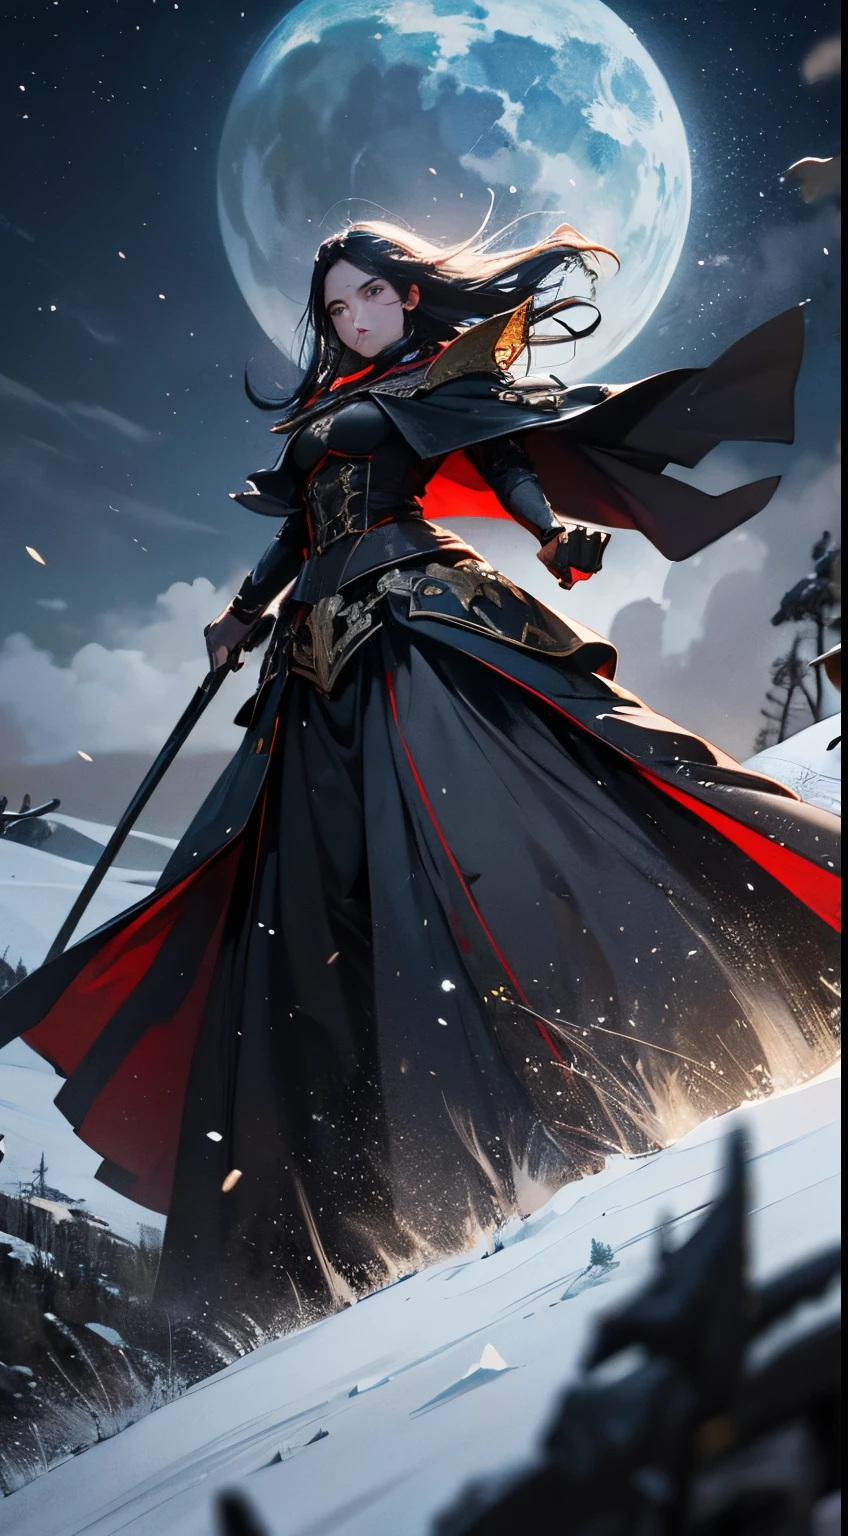 cavaleiro negro espada de 火s amadura medieval, 雪に覆われた森の背景, 燃える木(火) 夜